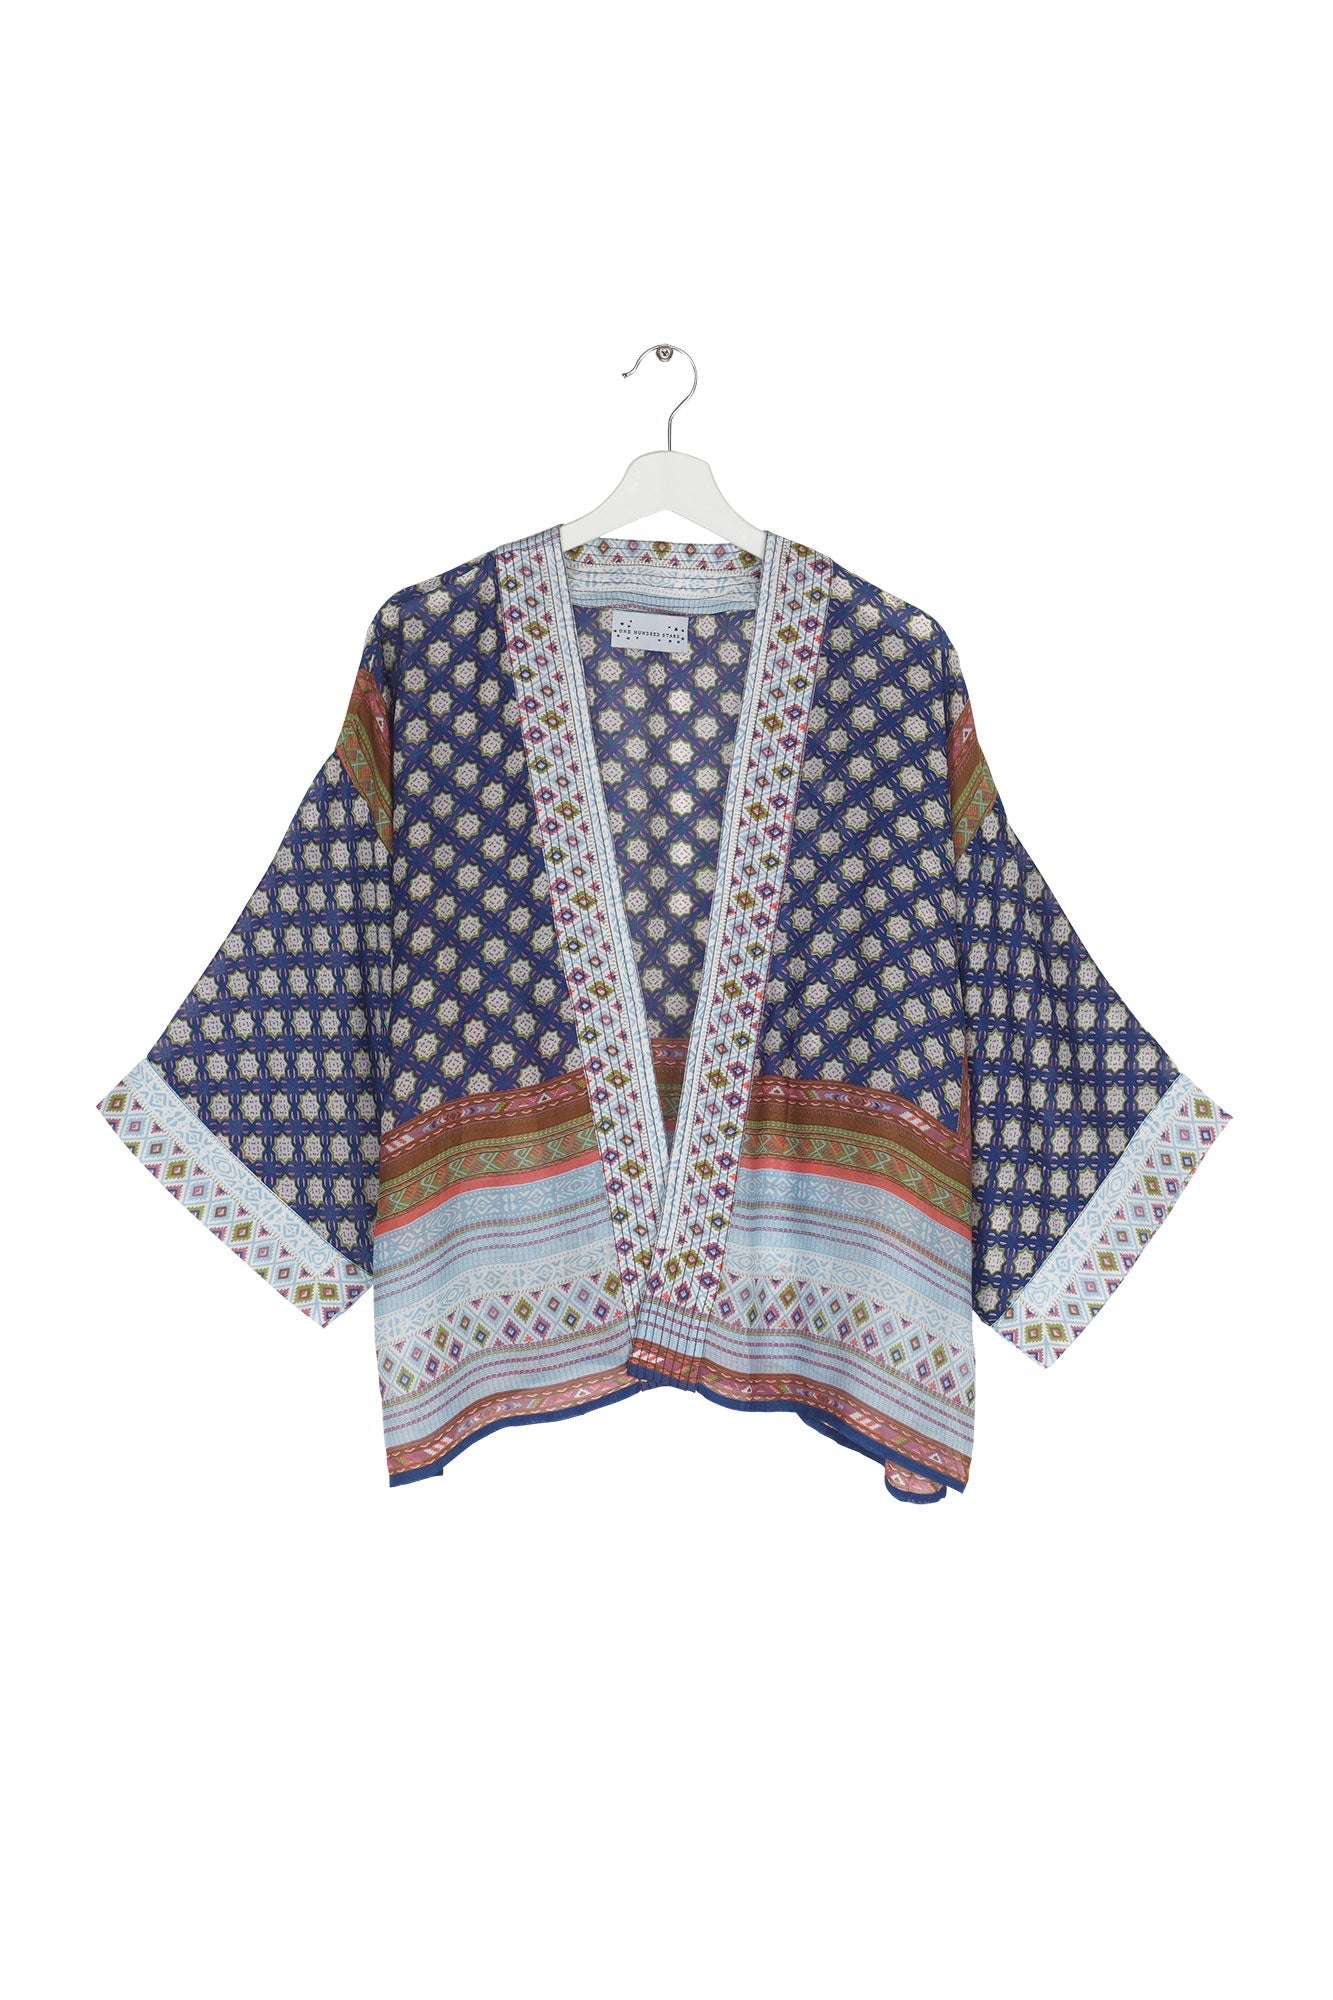 Moorish Indigo Kimono by One Hundred Stars